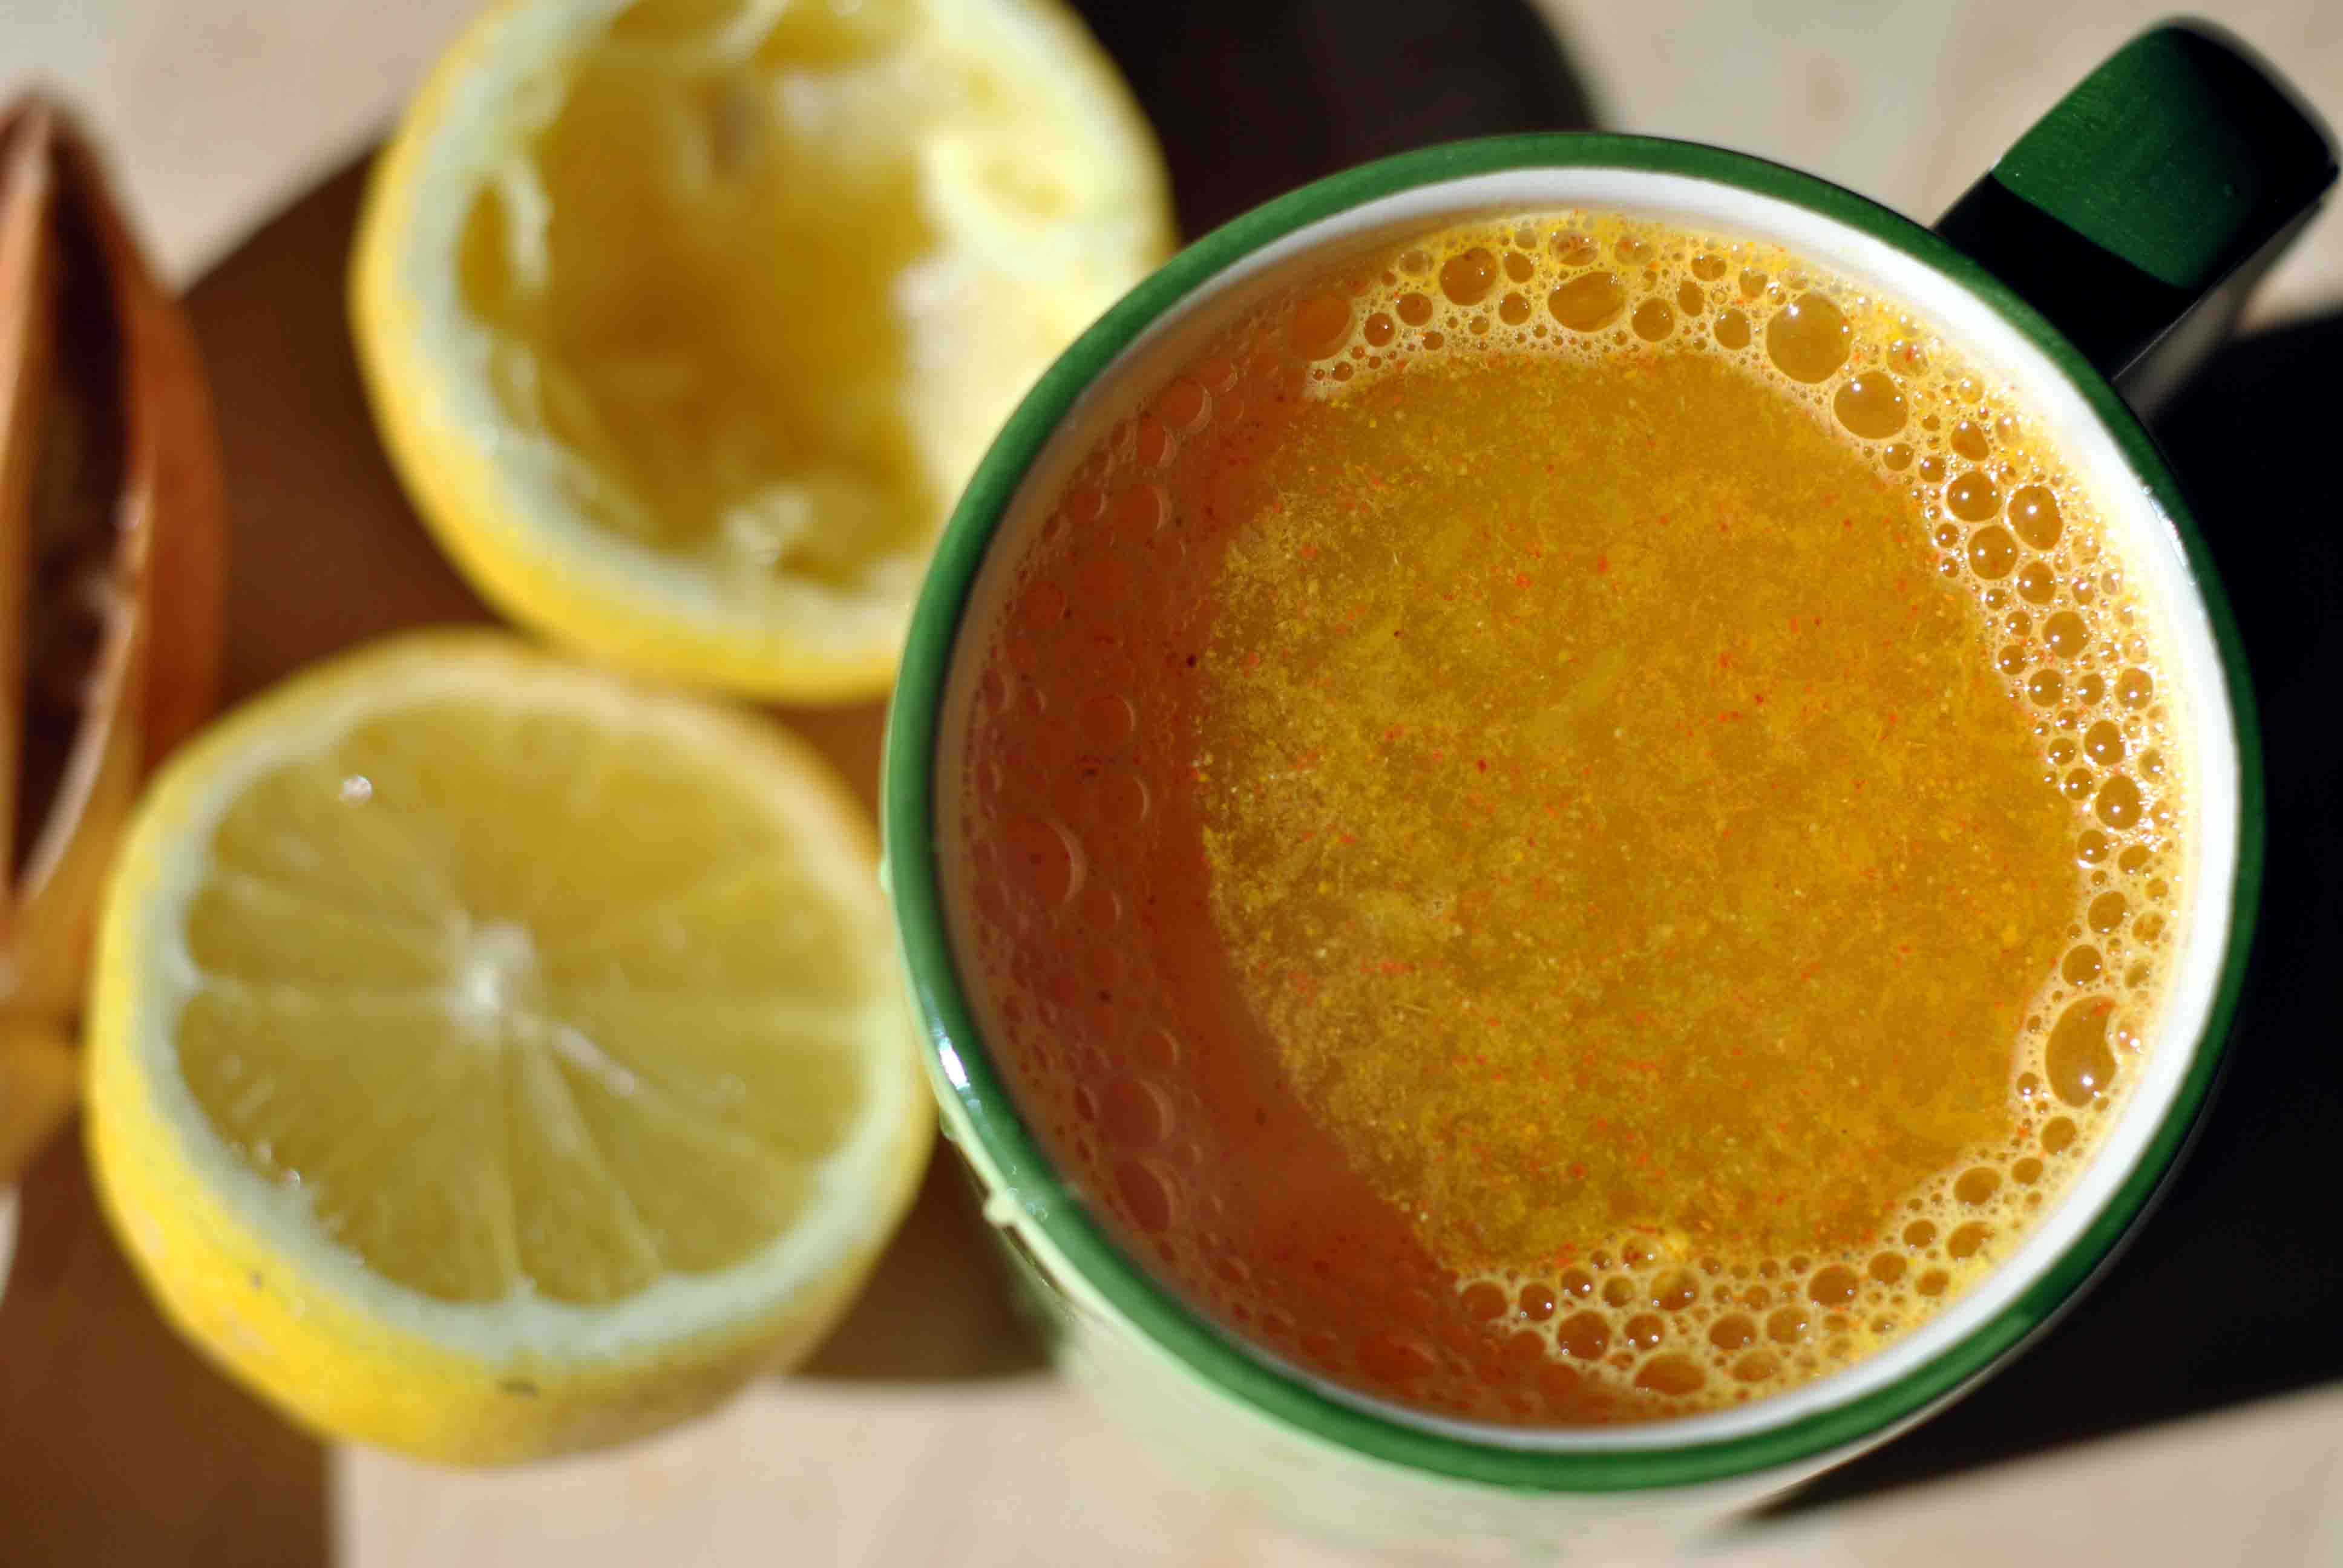 Citrona dzēriens ar kurkumu: veiciet organisma detoksikāciju un noņemiet iekaisumu!